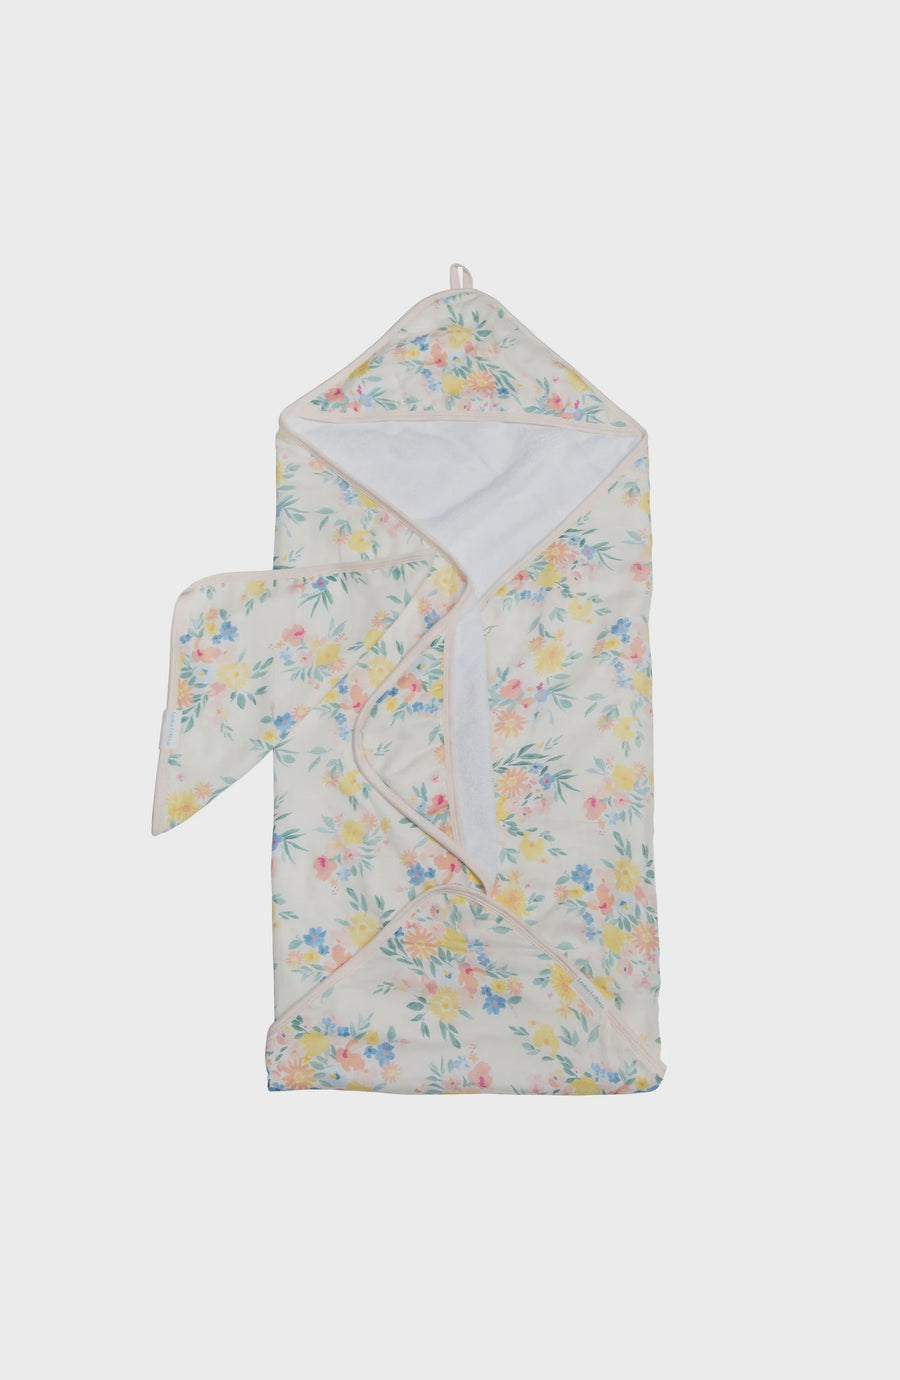 Loulou Lollipop - Hooded Towel Set - Floral Bouquet